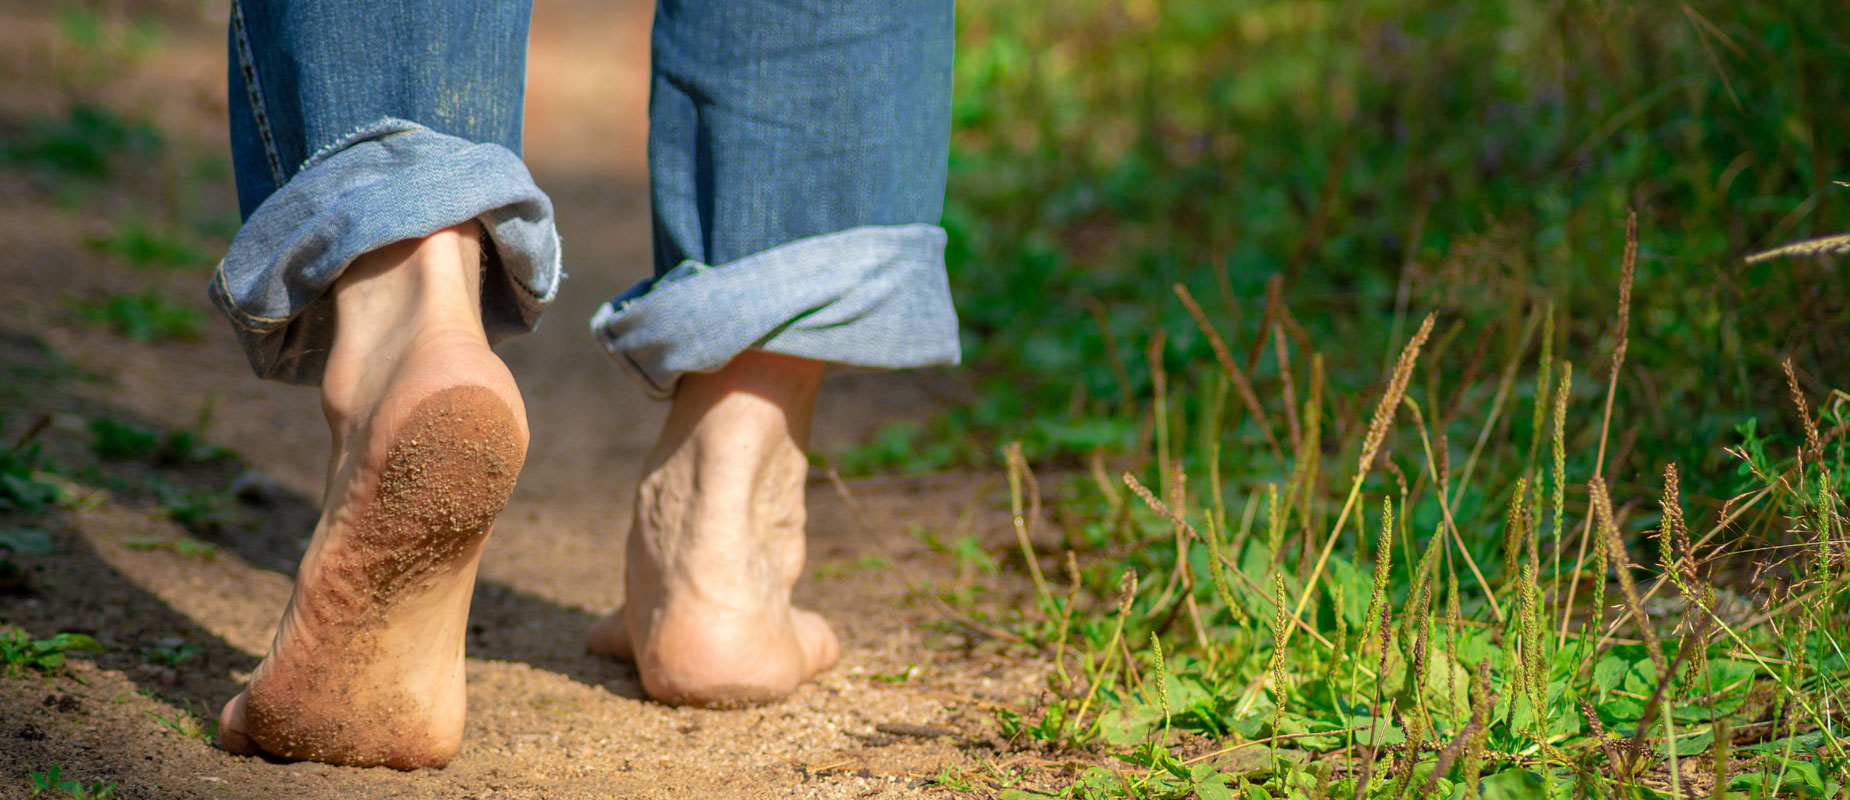 Correr zapatillas minimalistas o descalzo, lo mejor según ciencia